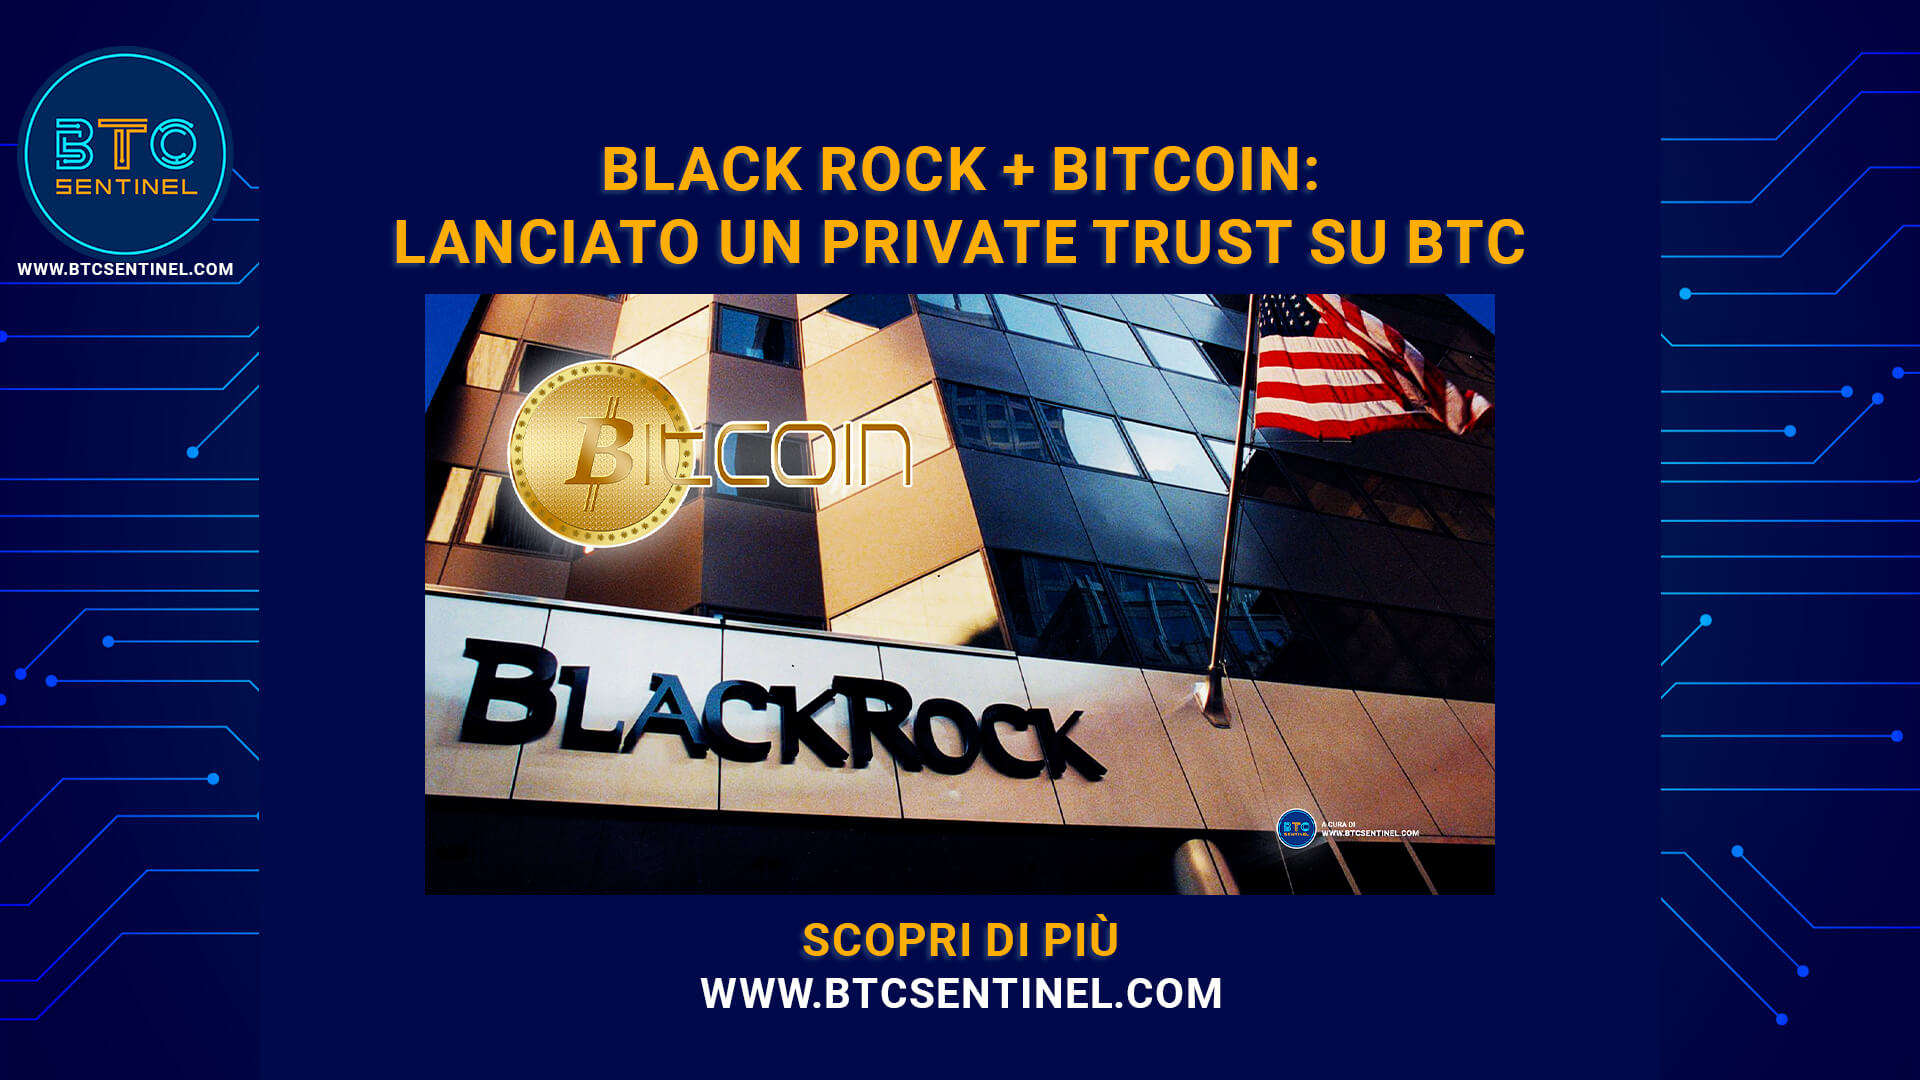 BlackRock lancia un private trust su Bitcoin